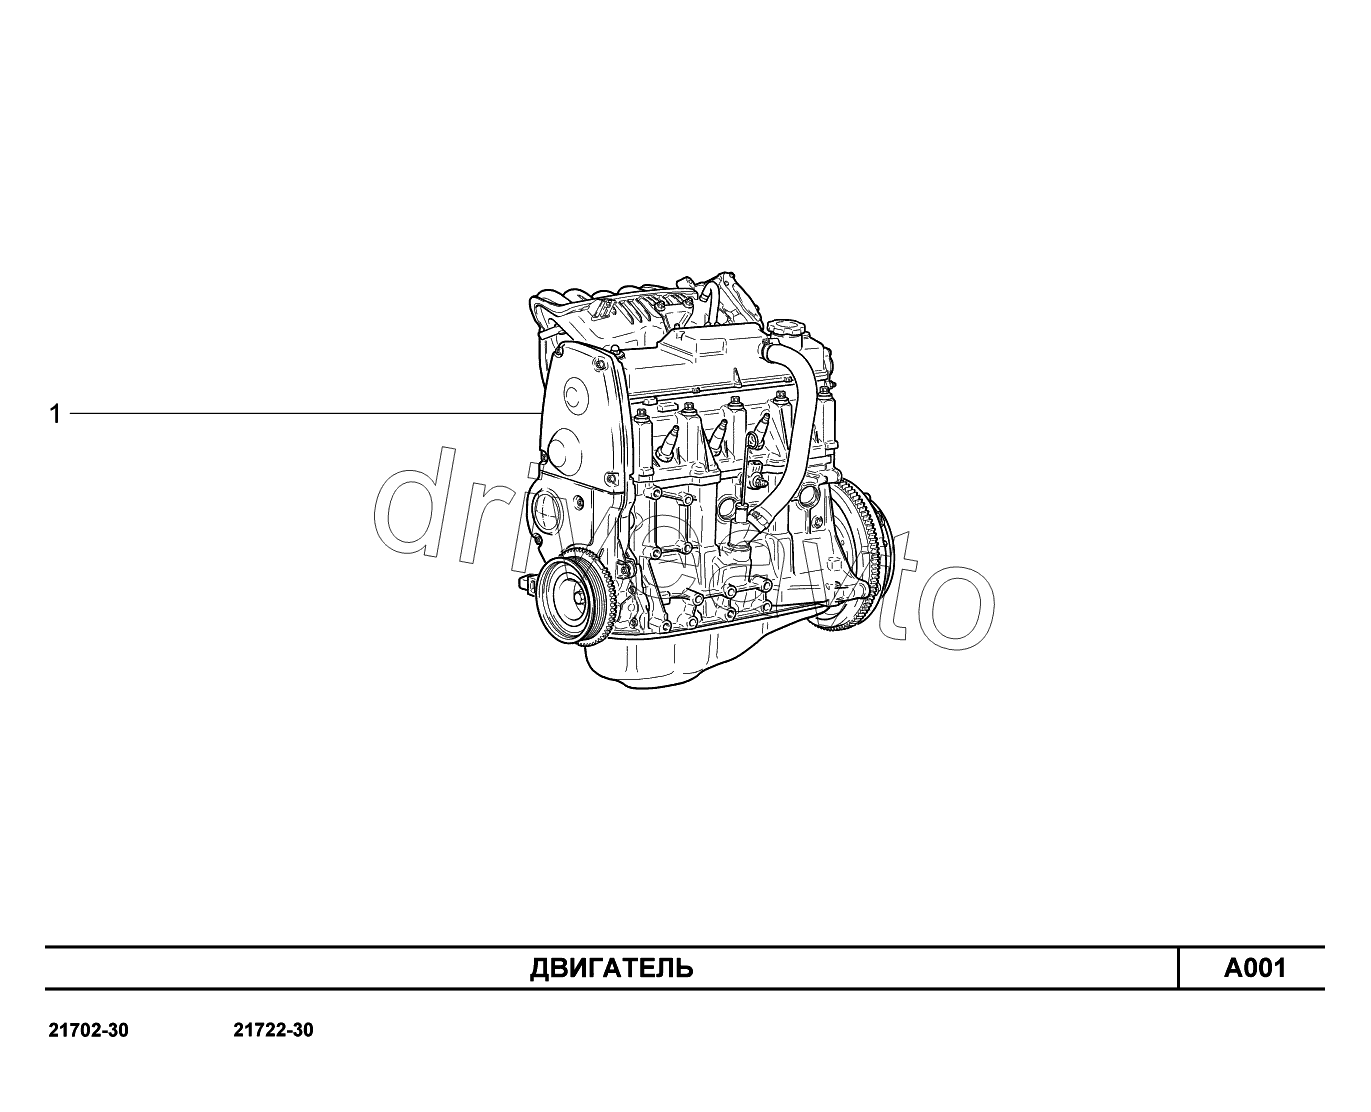 A001. Двигатель